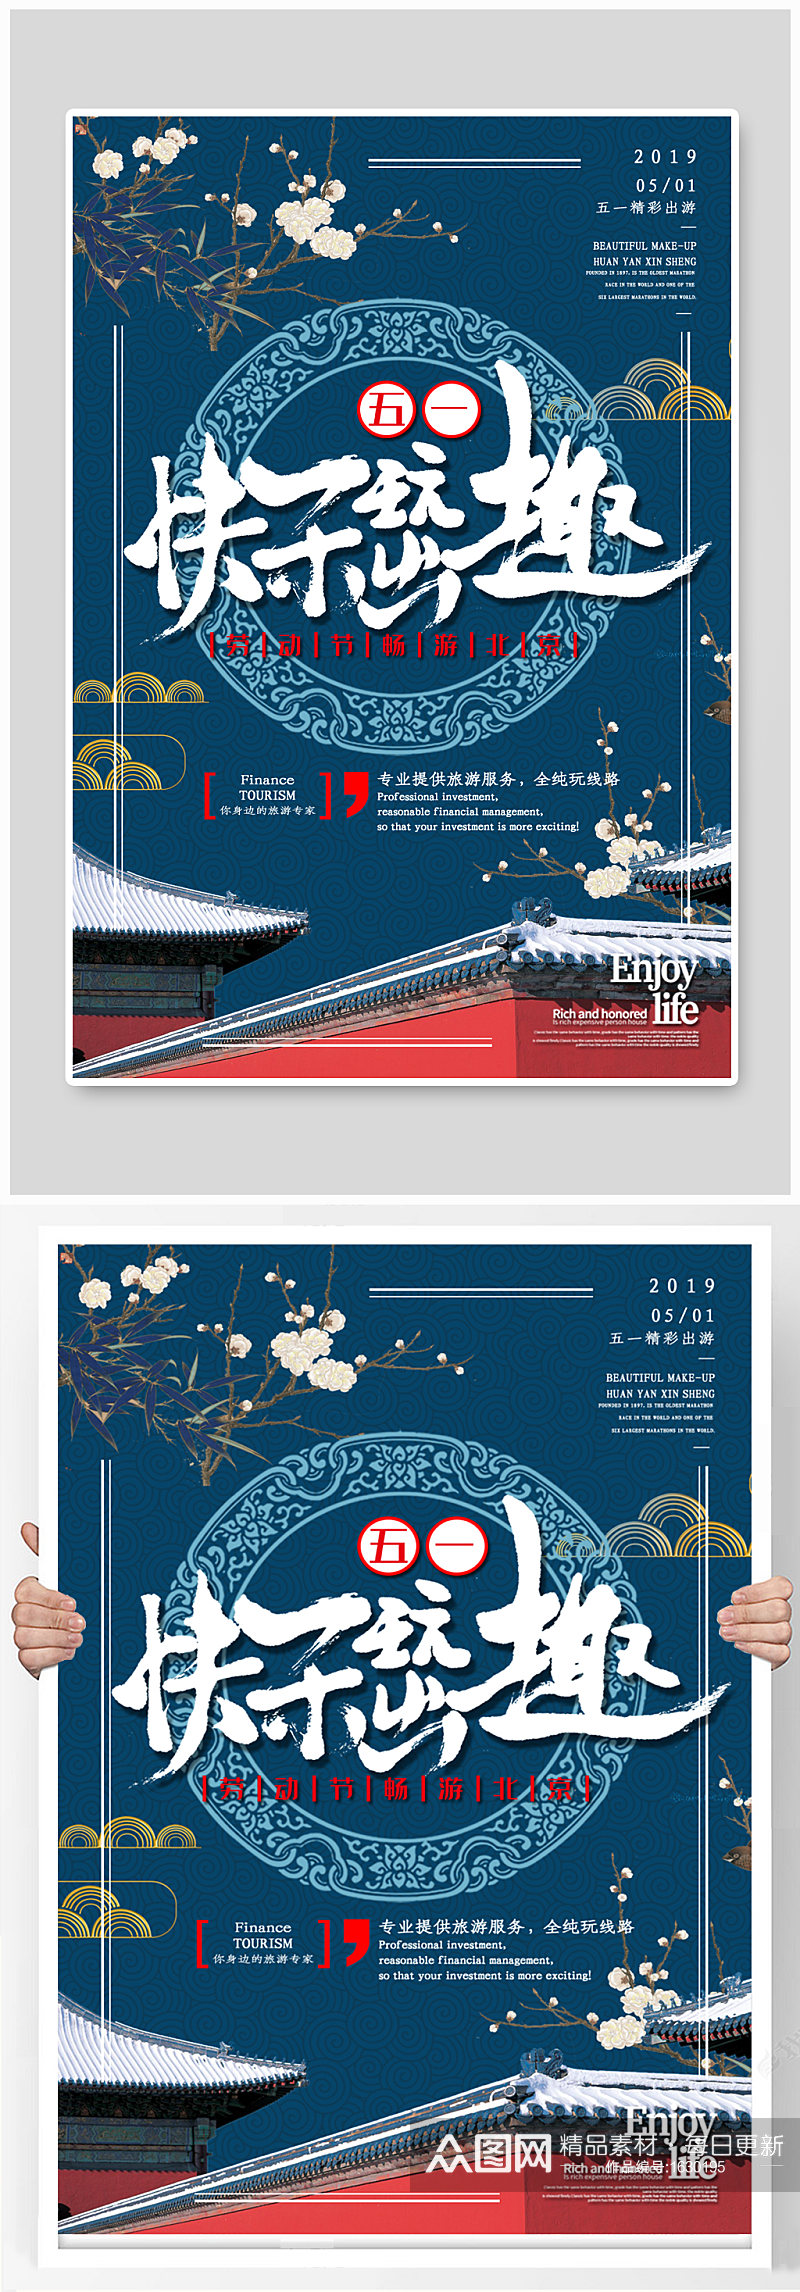 五一劳动节快乐出游北京旅行海报素材